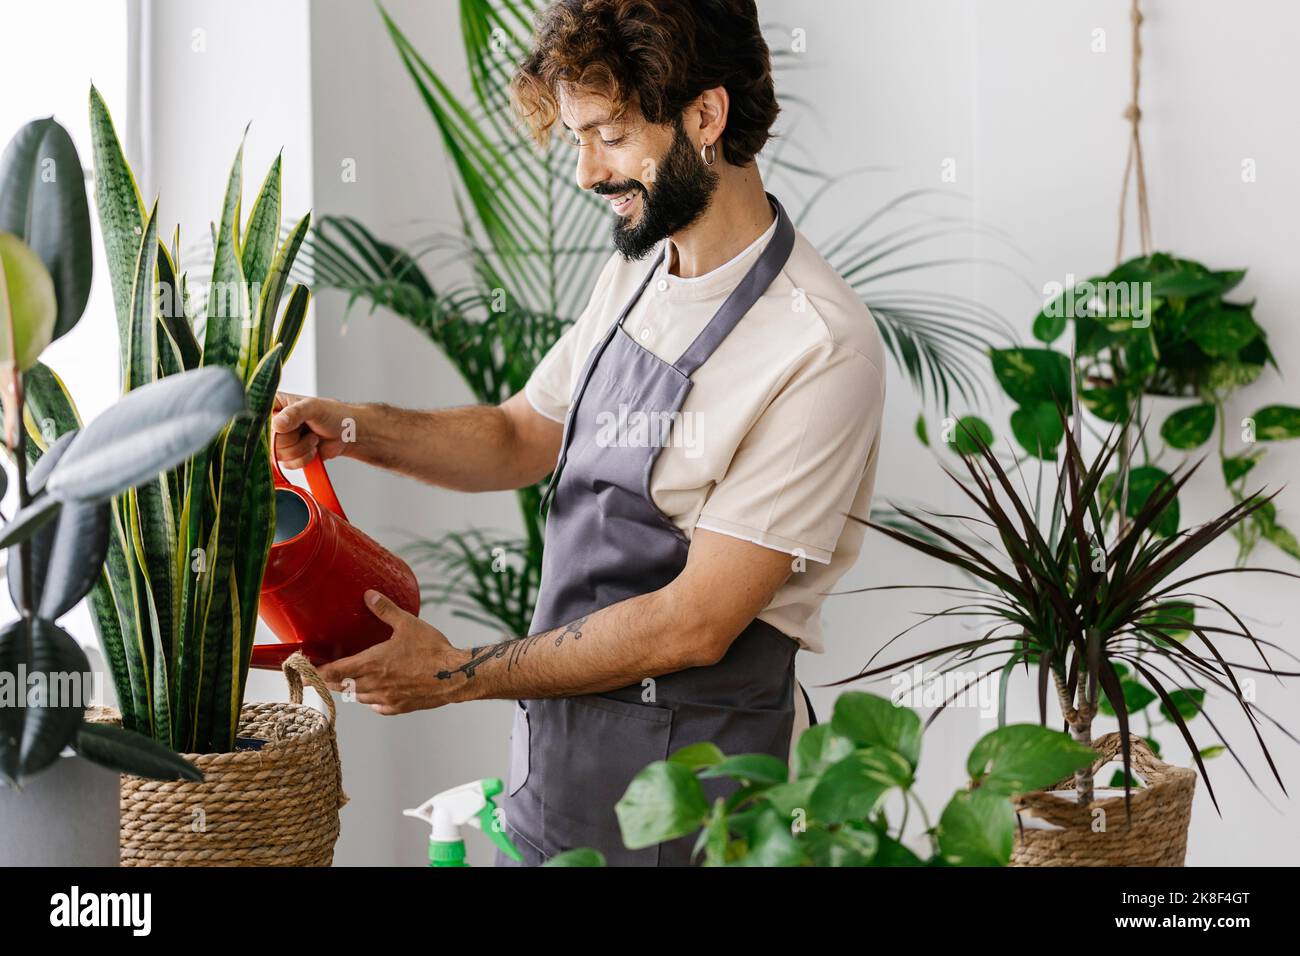 Uomo sorridente che innaffia la pianta dalla lattina al negozio della pianta Foto Stock